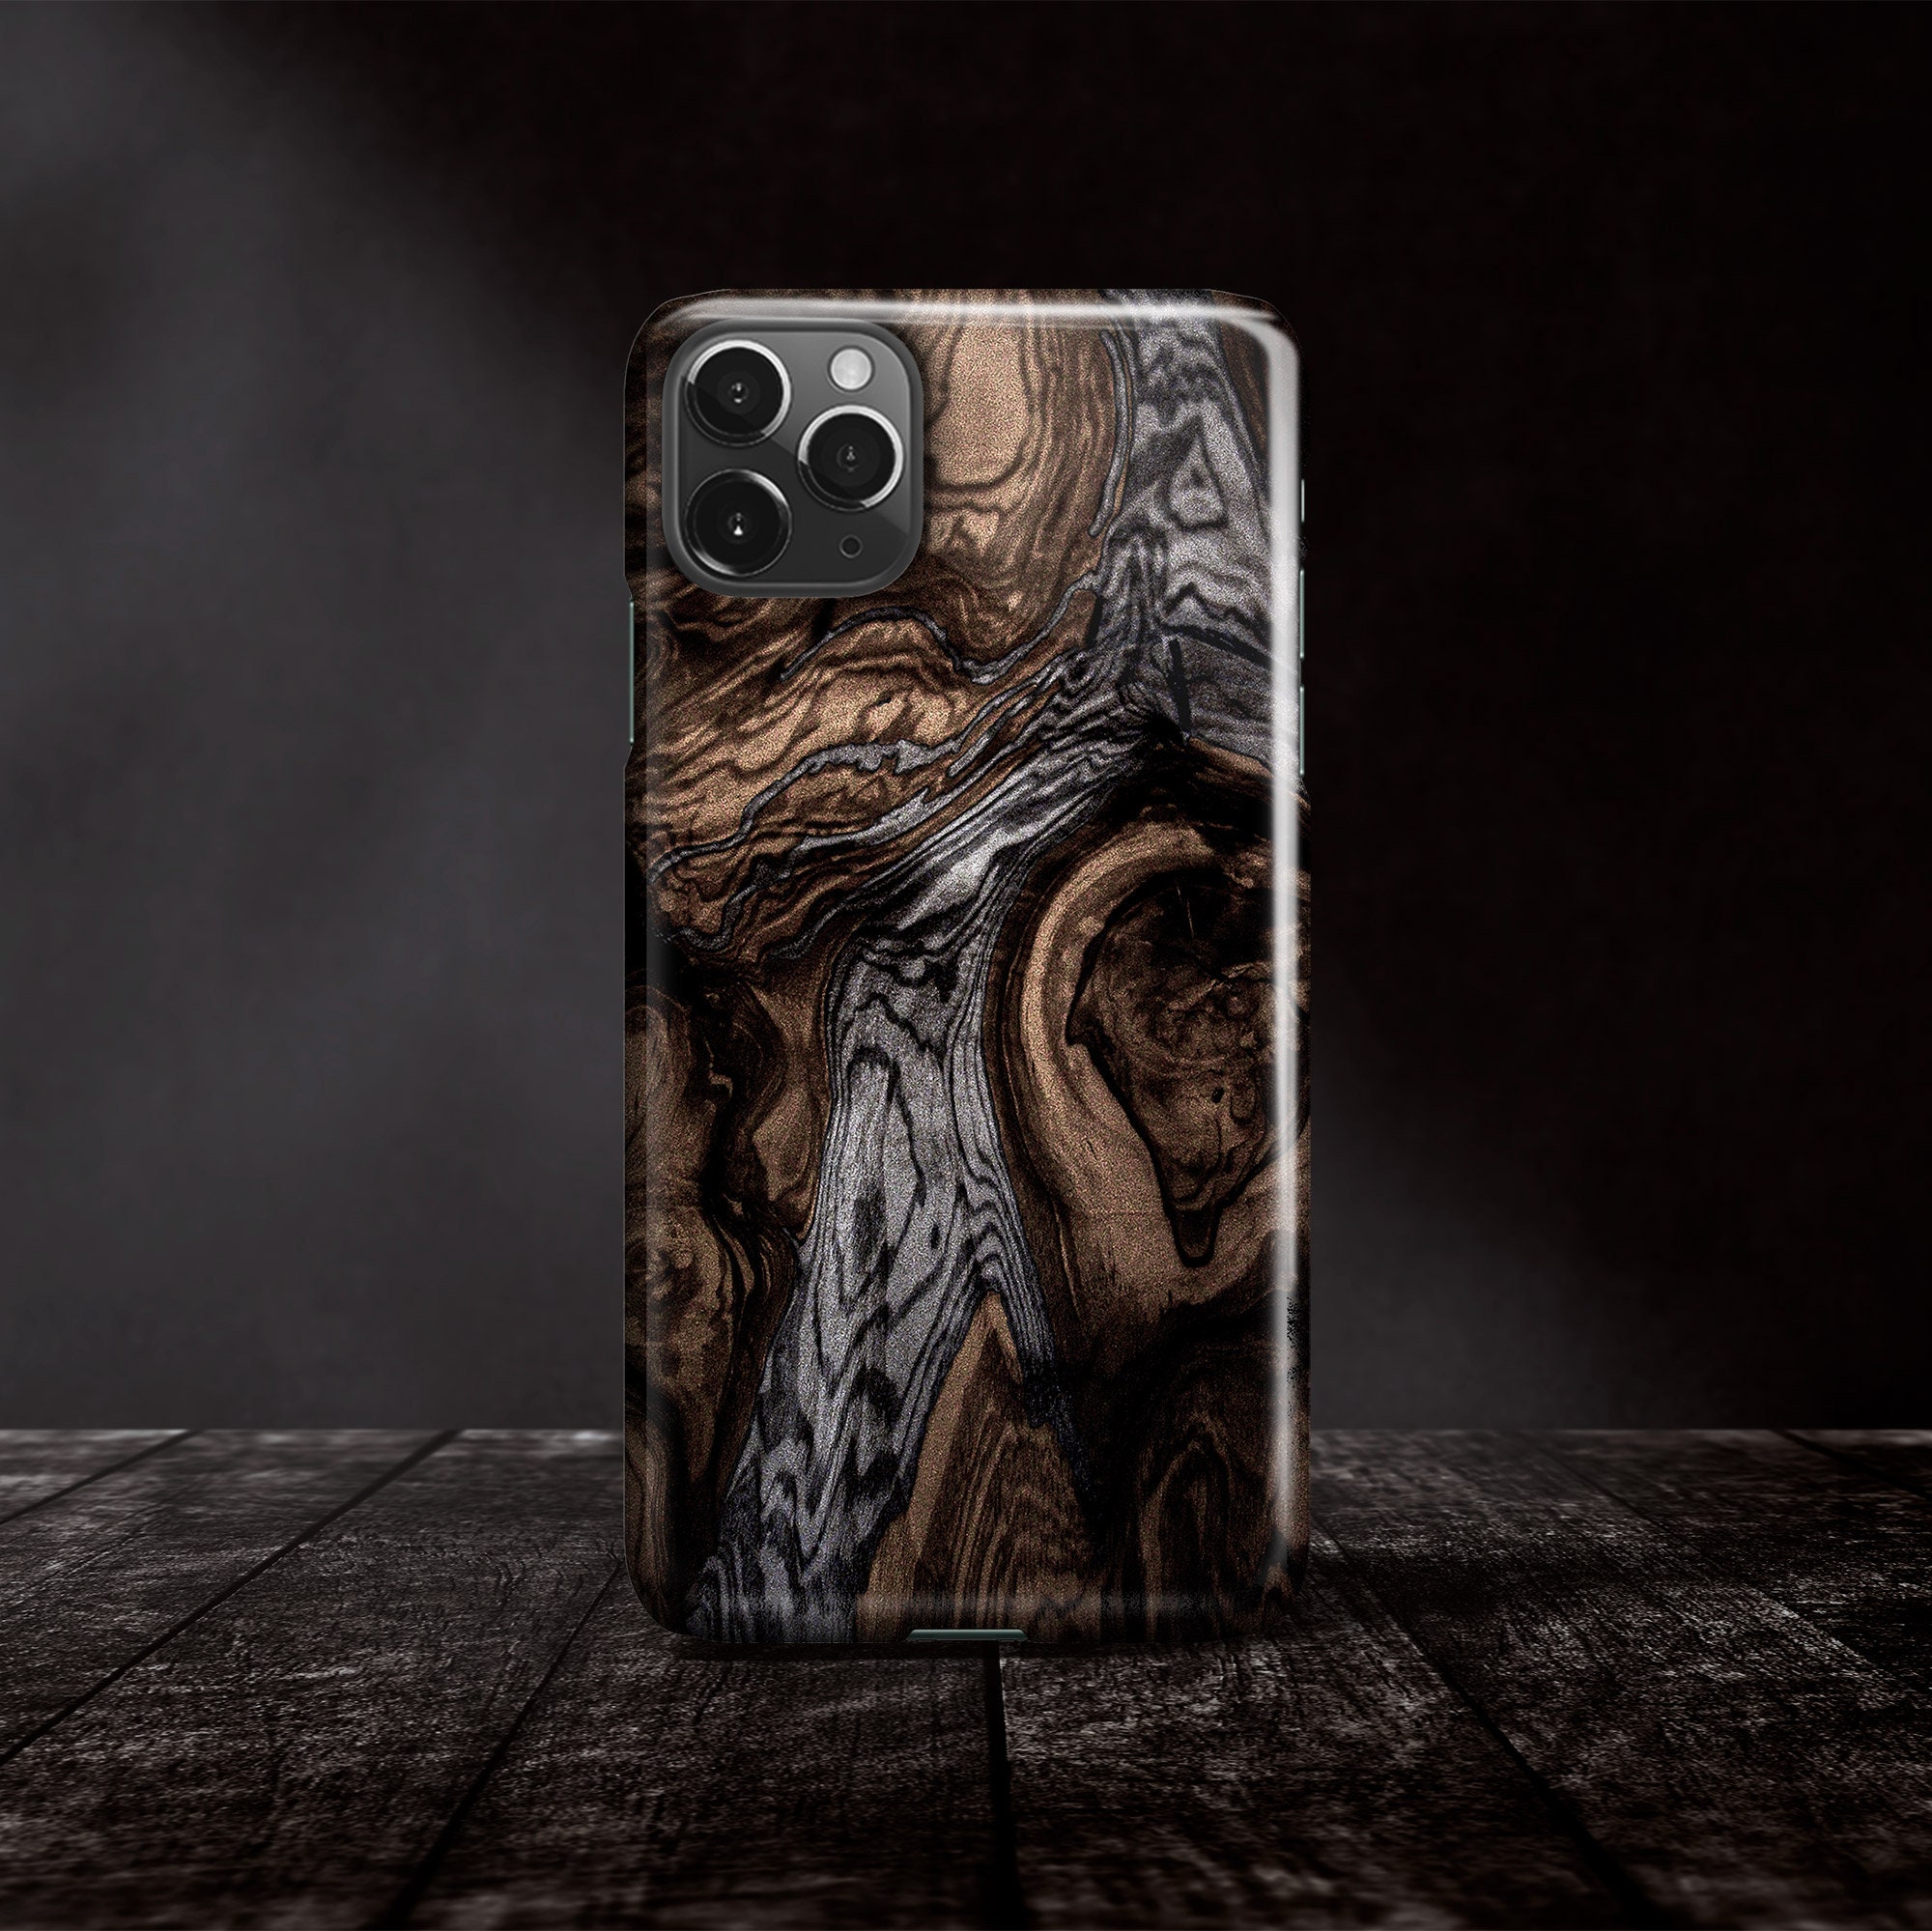 Logo-Embellished Full-Grain Leather iPhone 12 Pro Case